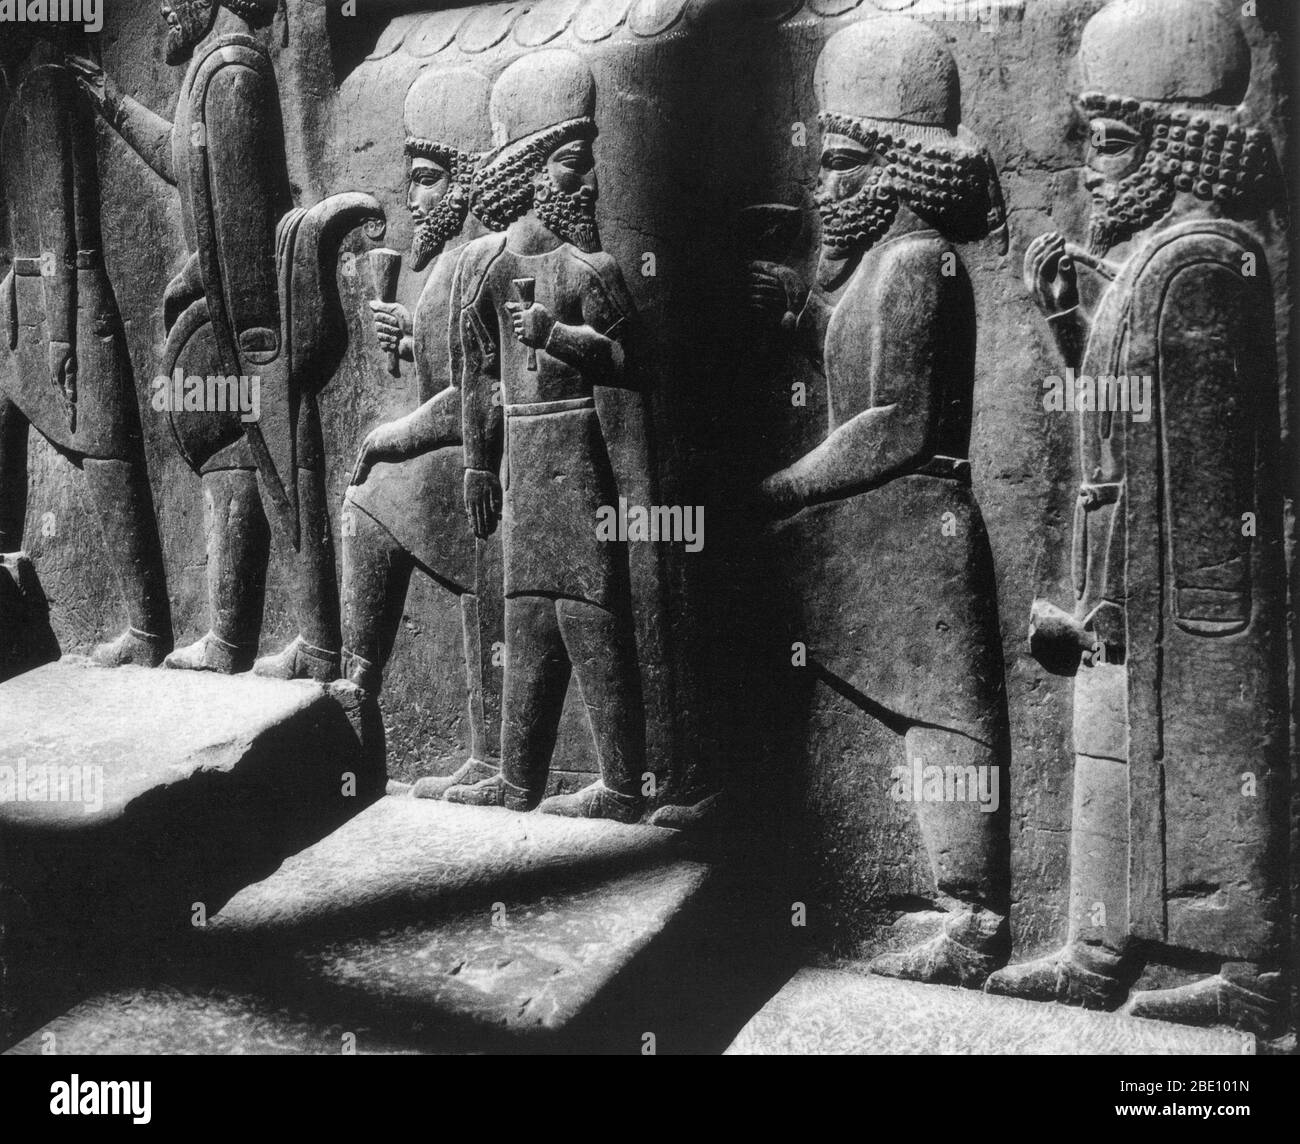 Homenaje portadores en un relieve a lo largo de la escalera norte de la sala del Consejo (Tripylon), en la antigua capital de Perisan Persépolis, Irán, que datan de alrededor de 500 AC. Foto de stock